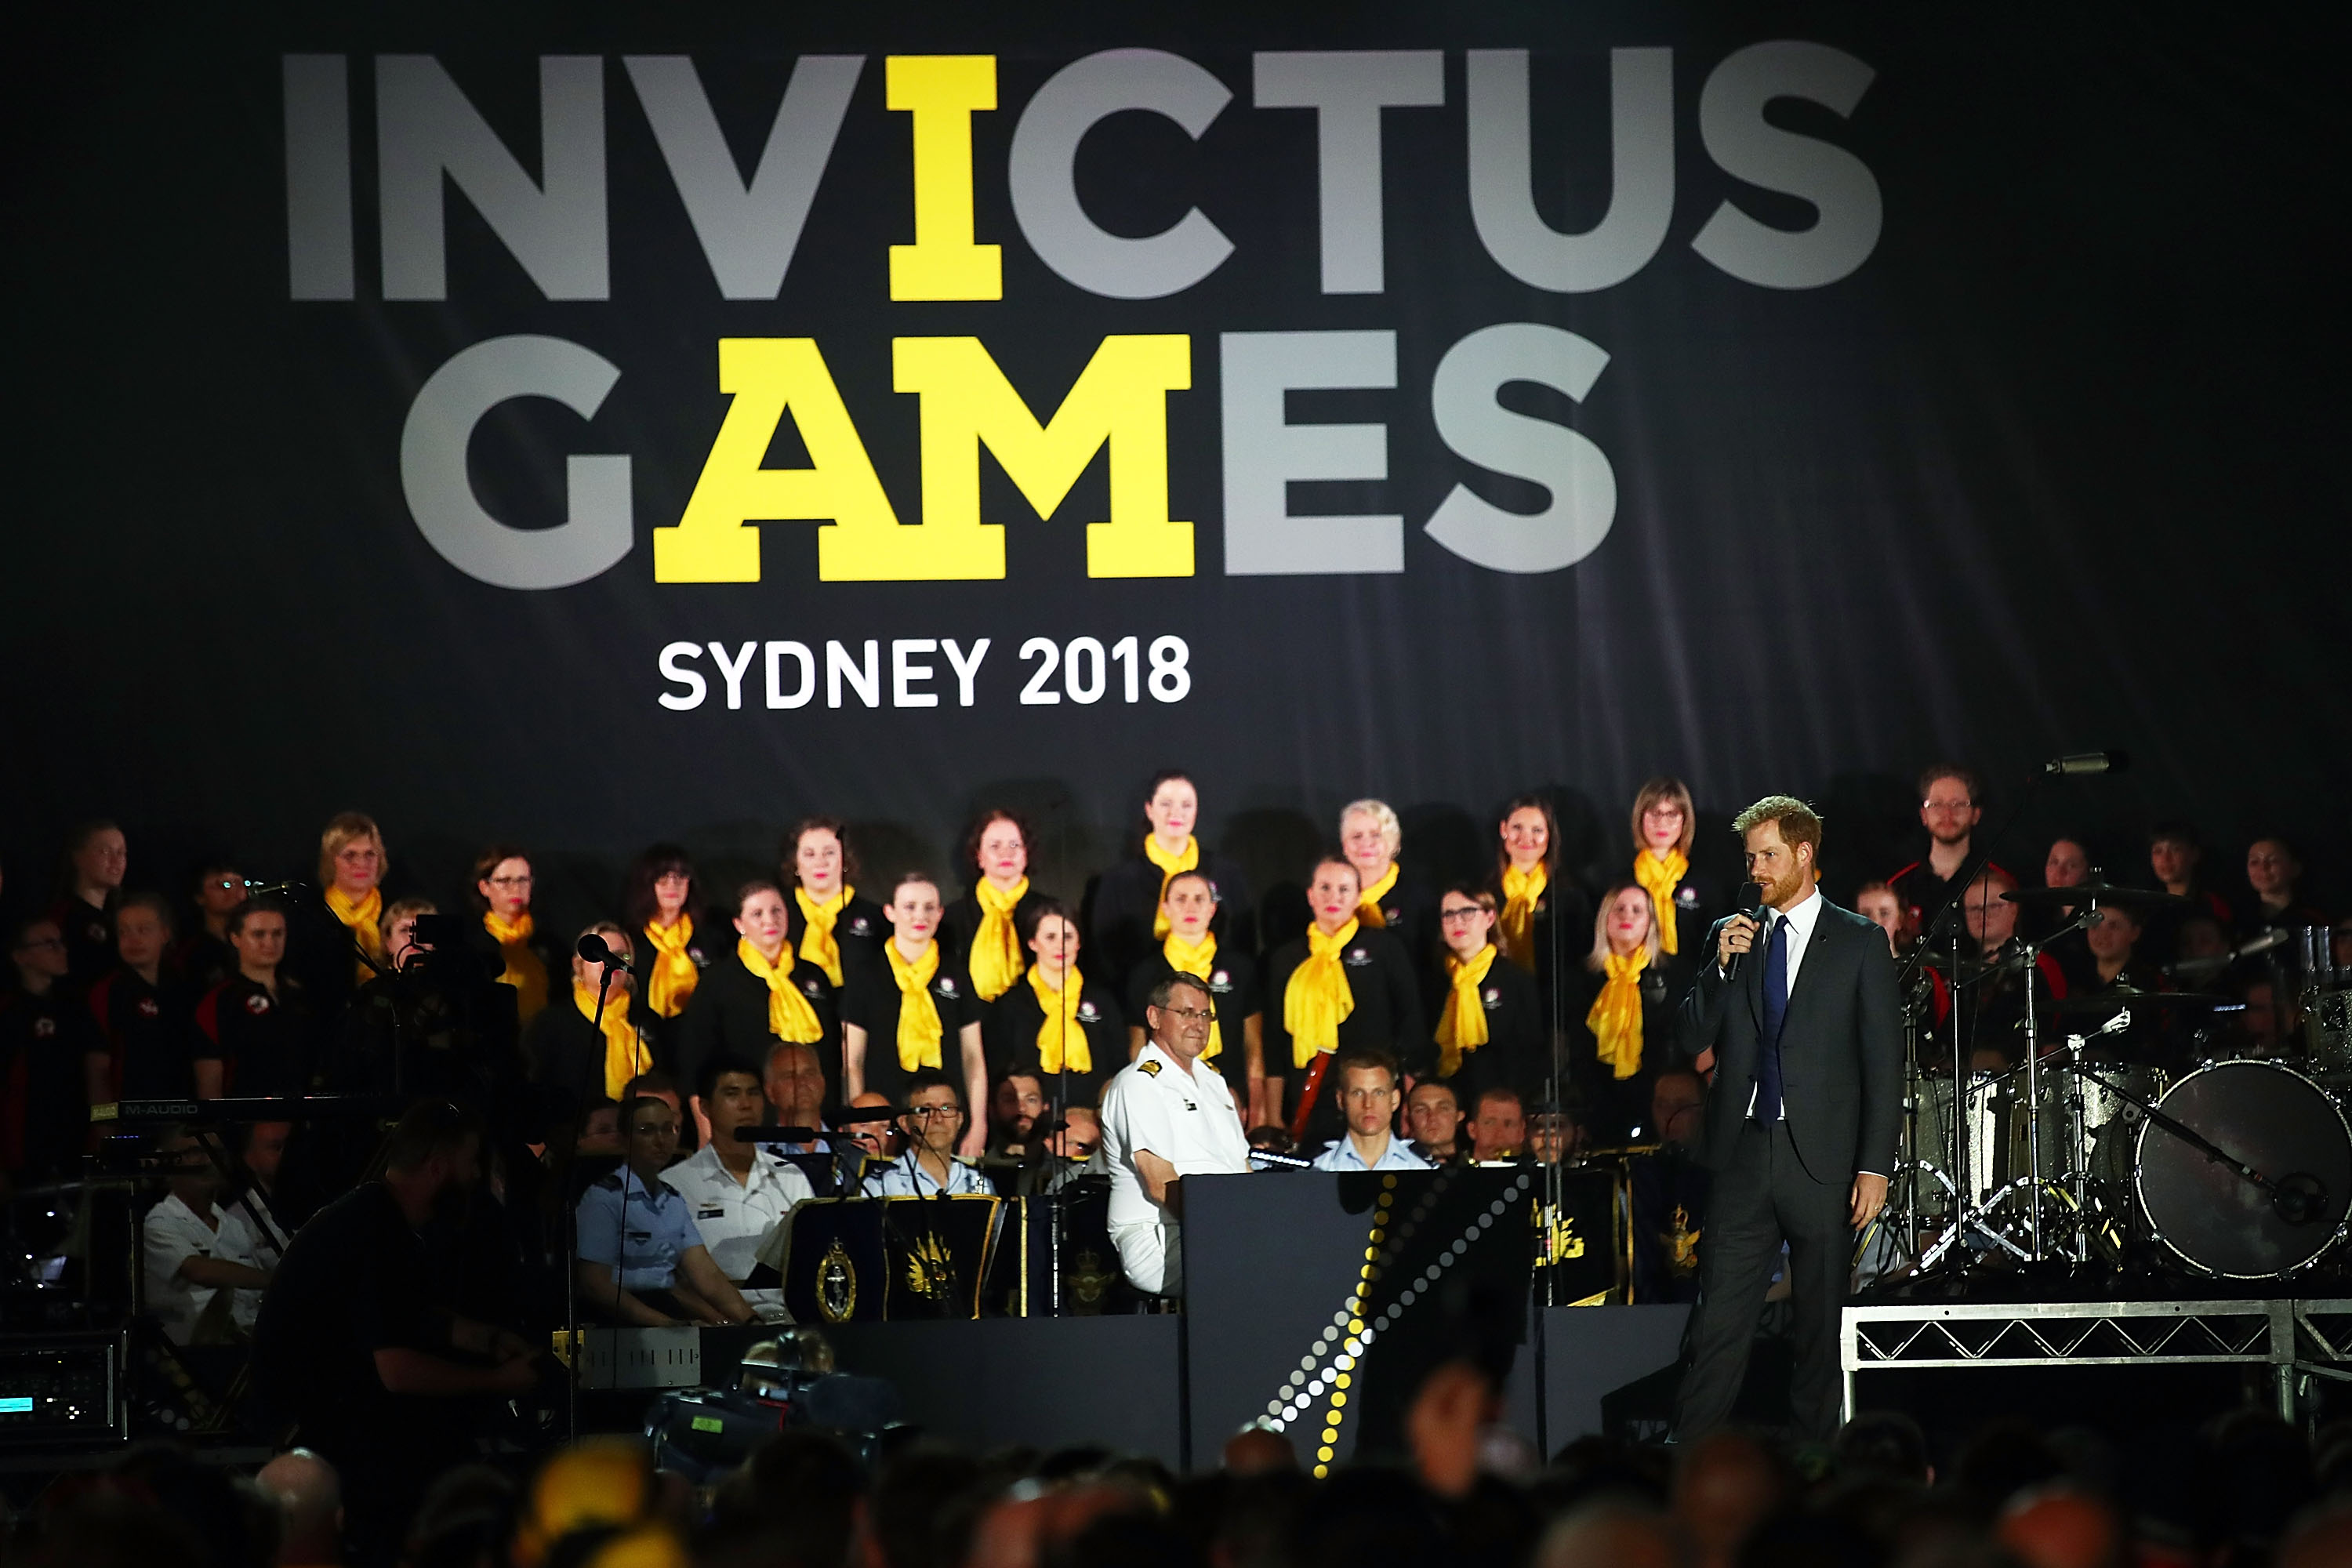 El príncipe Harry habla durante la Ceremonia de Inauguración de los nvictus Games Sydney 2018 en la Ópera de Sídney el 20 de octubre de 2018 en Sídney, Australia | Foto: Getty Images